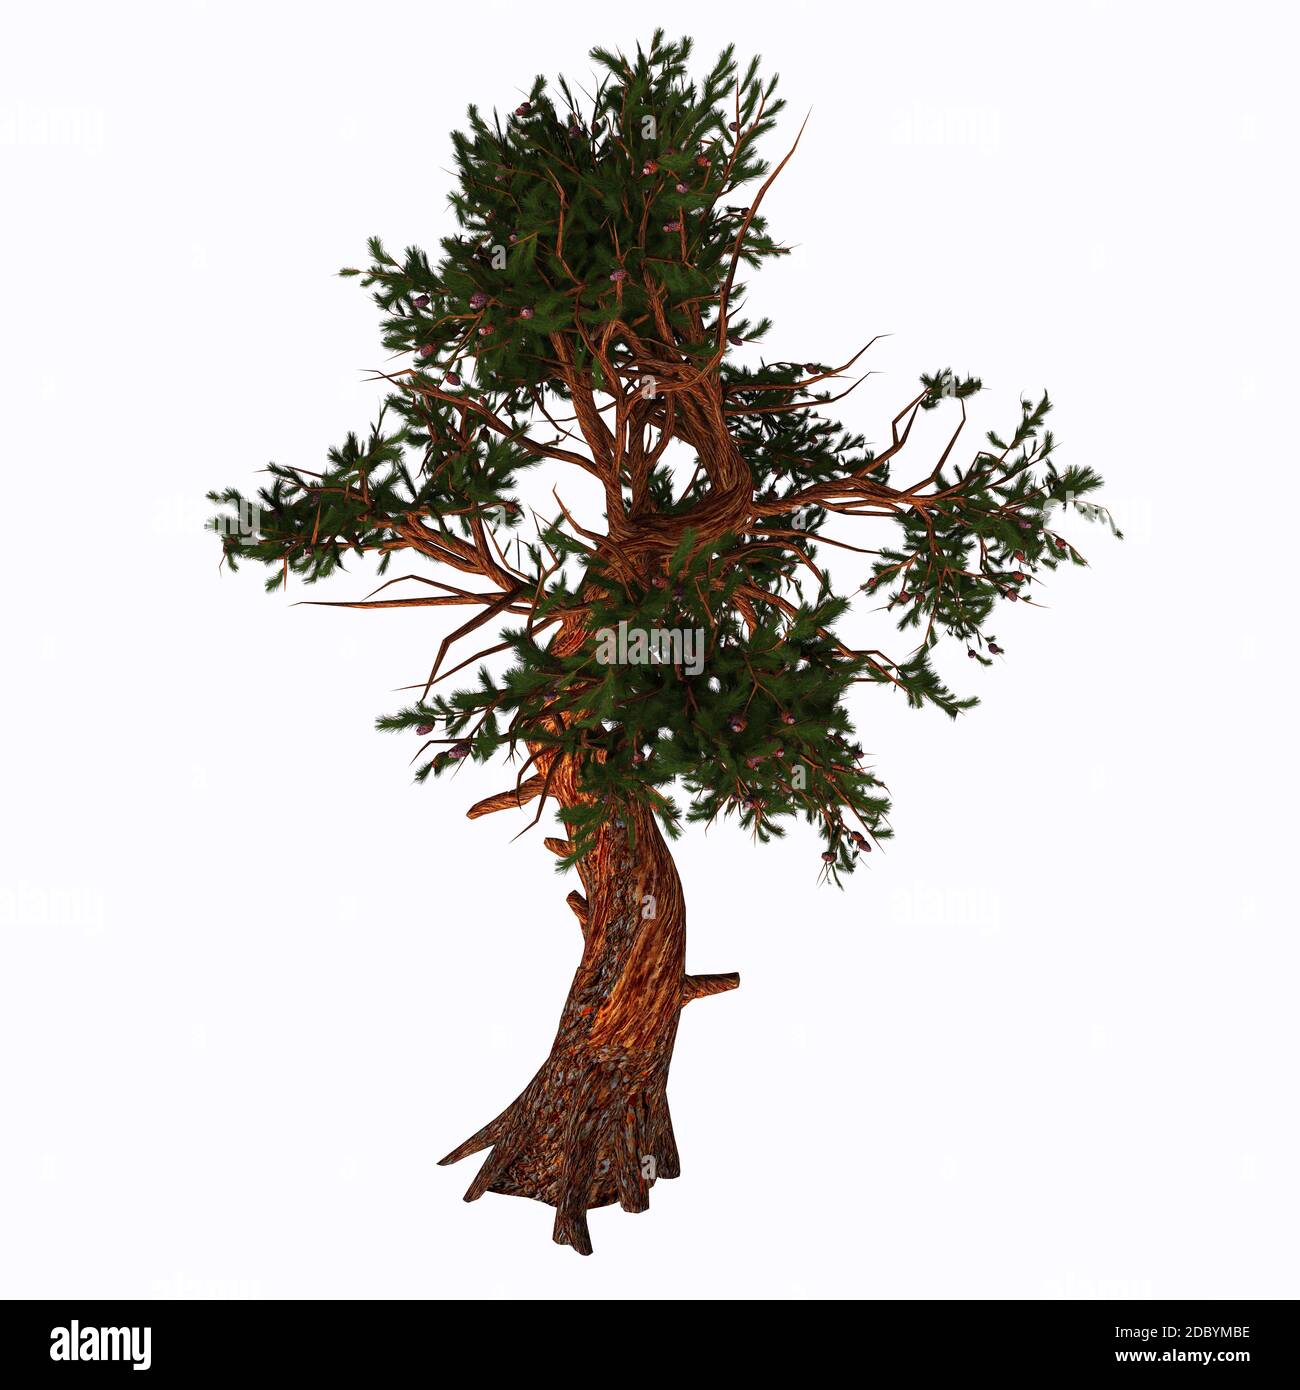 Pinus aristota, le pin des montagnes Rocheuses, est une espèce de pin originaire des États-Unis. Il apparaît dans les montagnes Rocheuses dans le Colorado A. Banque D'Images